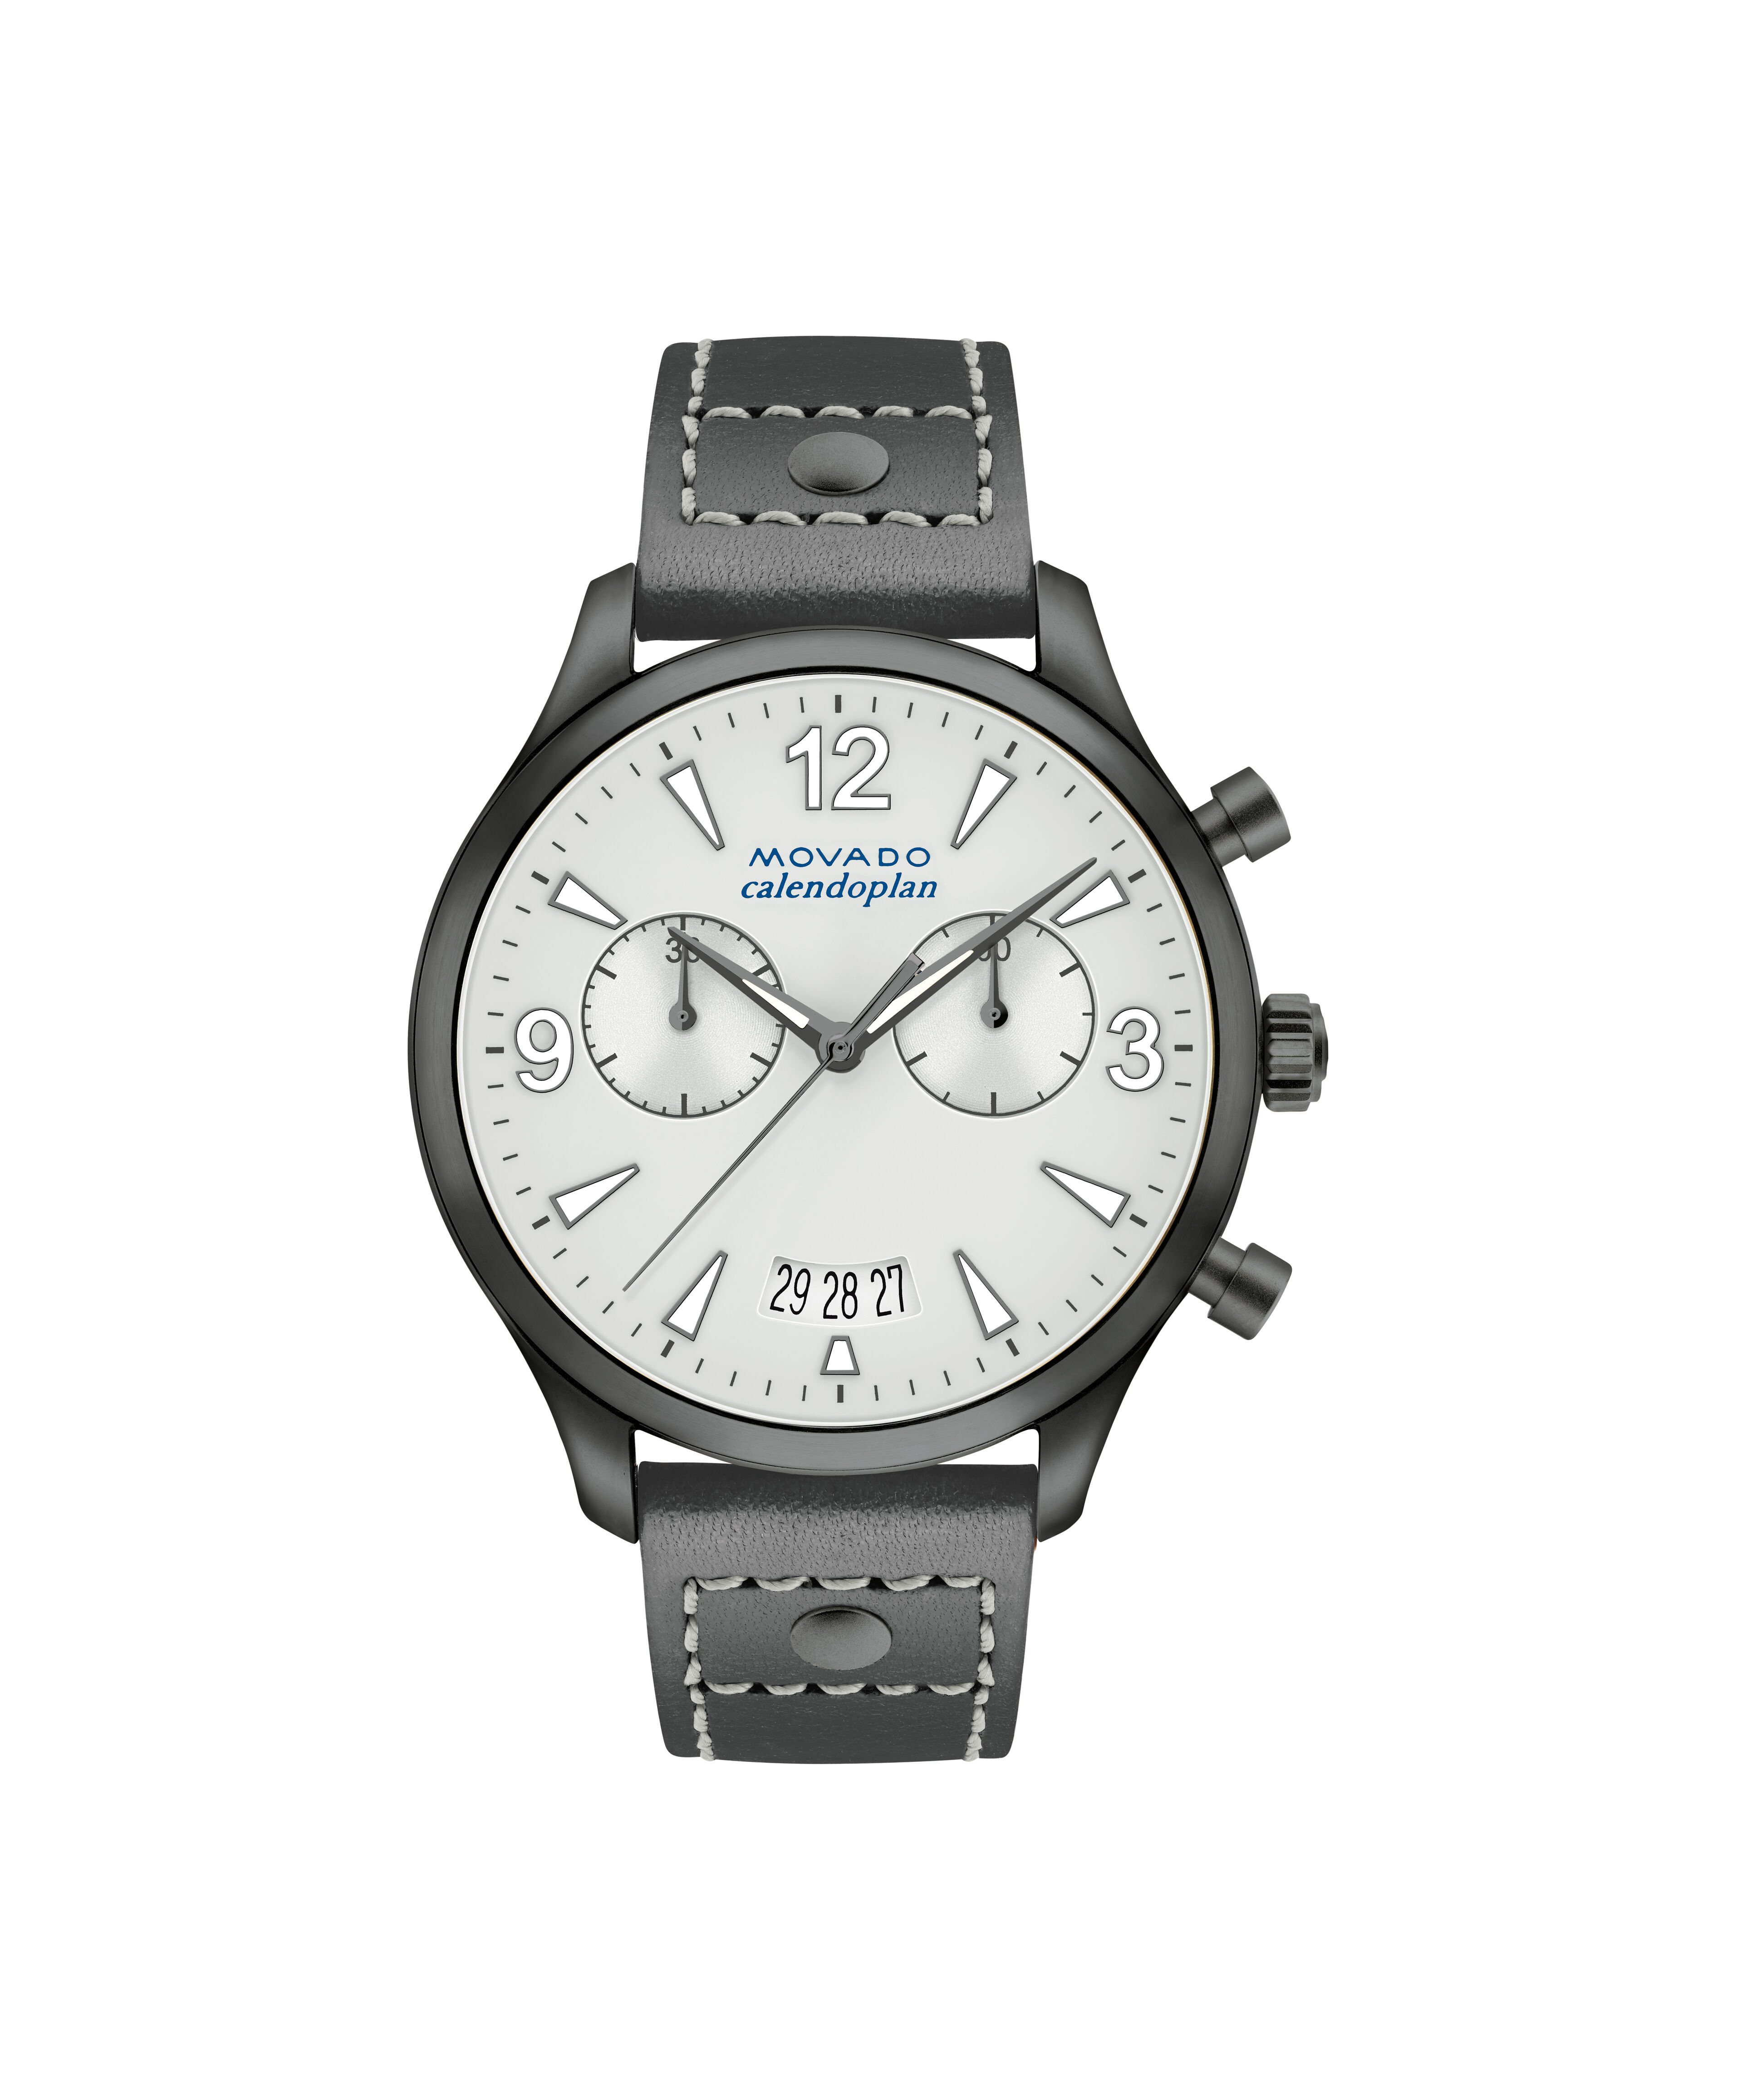 Replicas Breguet Watch